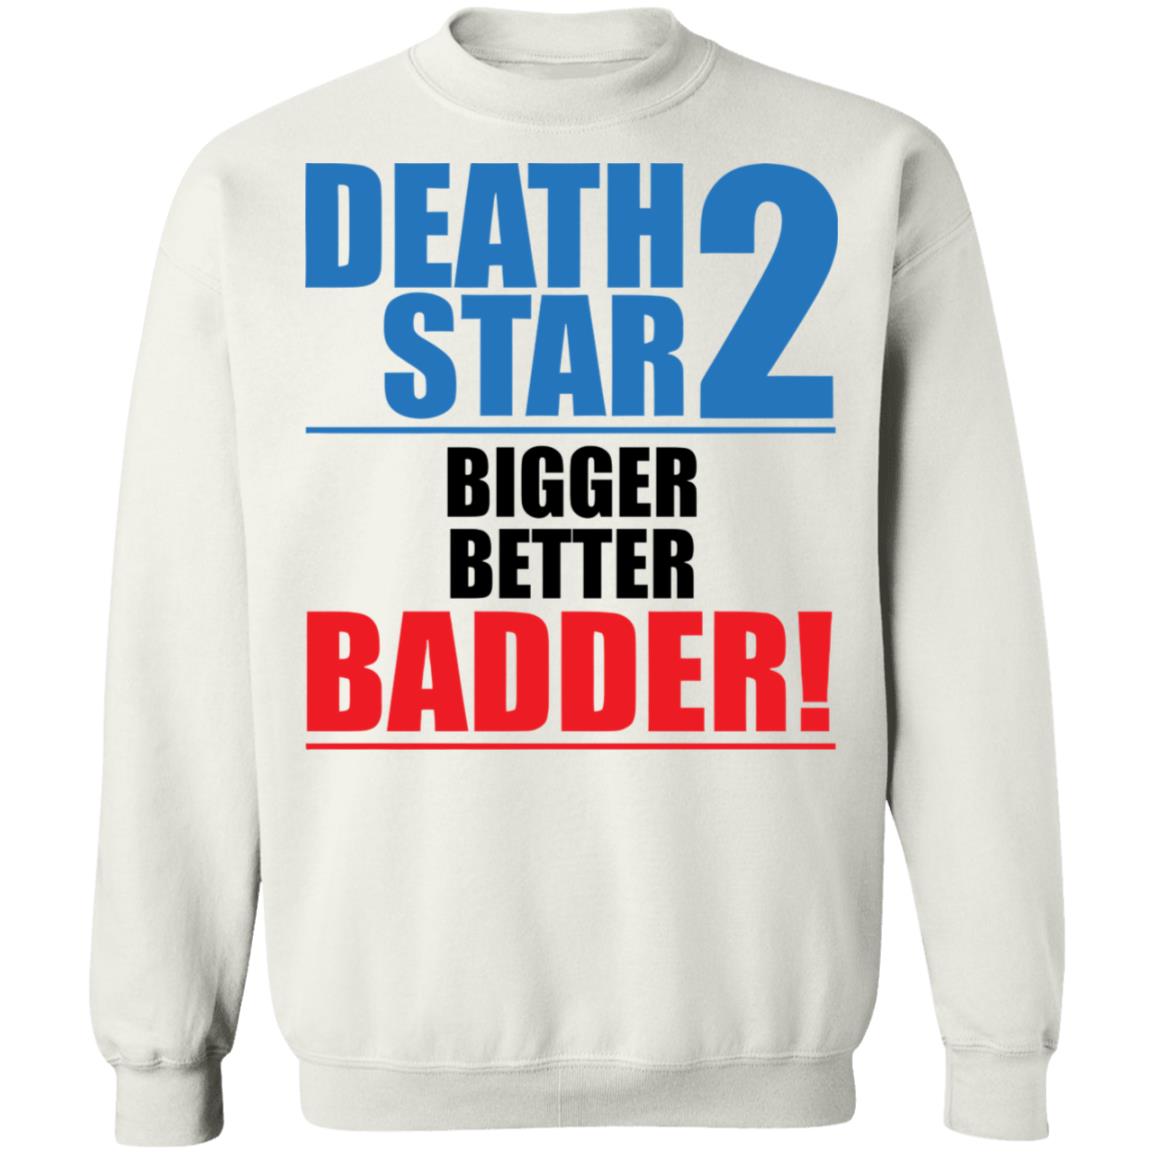 Death Star 2 Bigger Better Badder Shirt 2